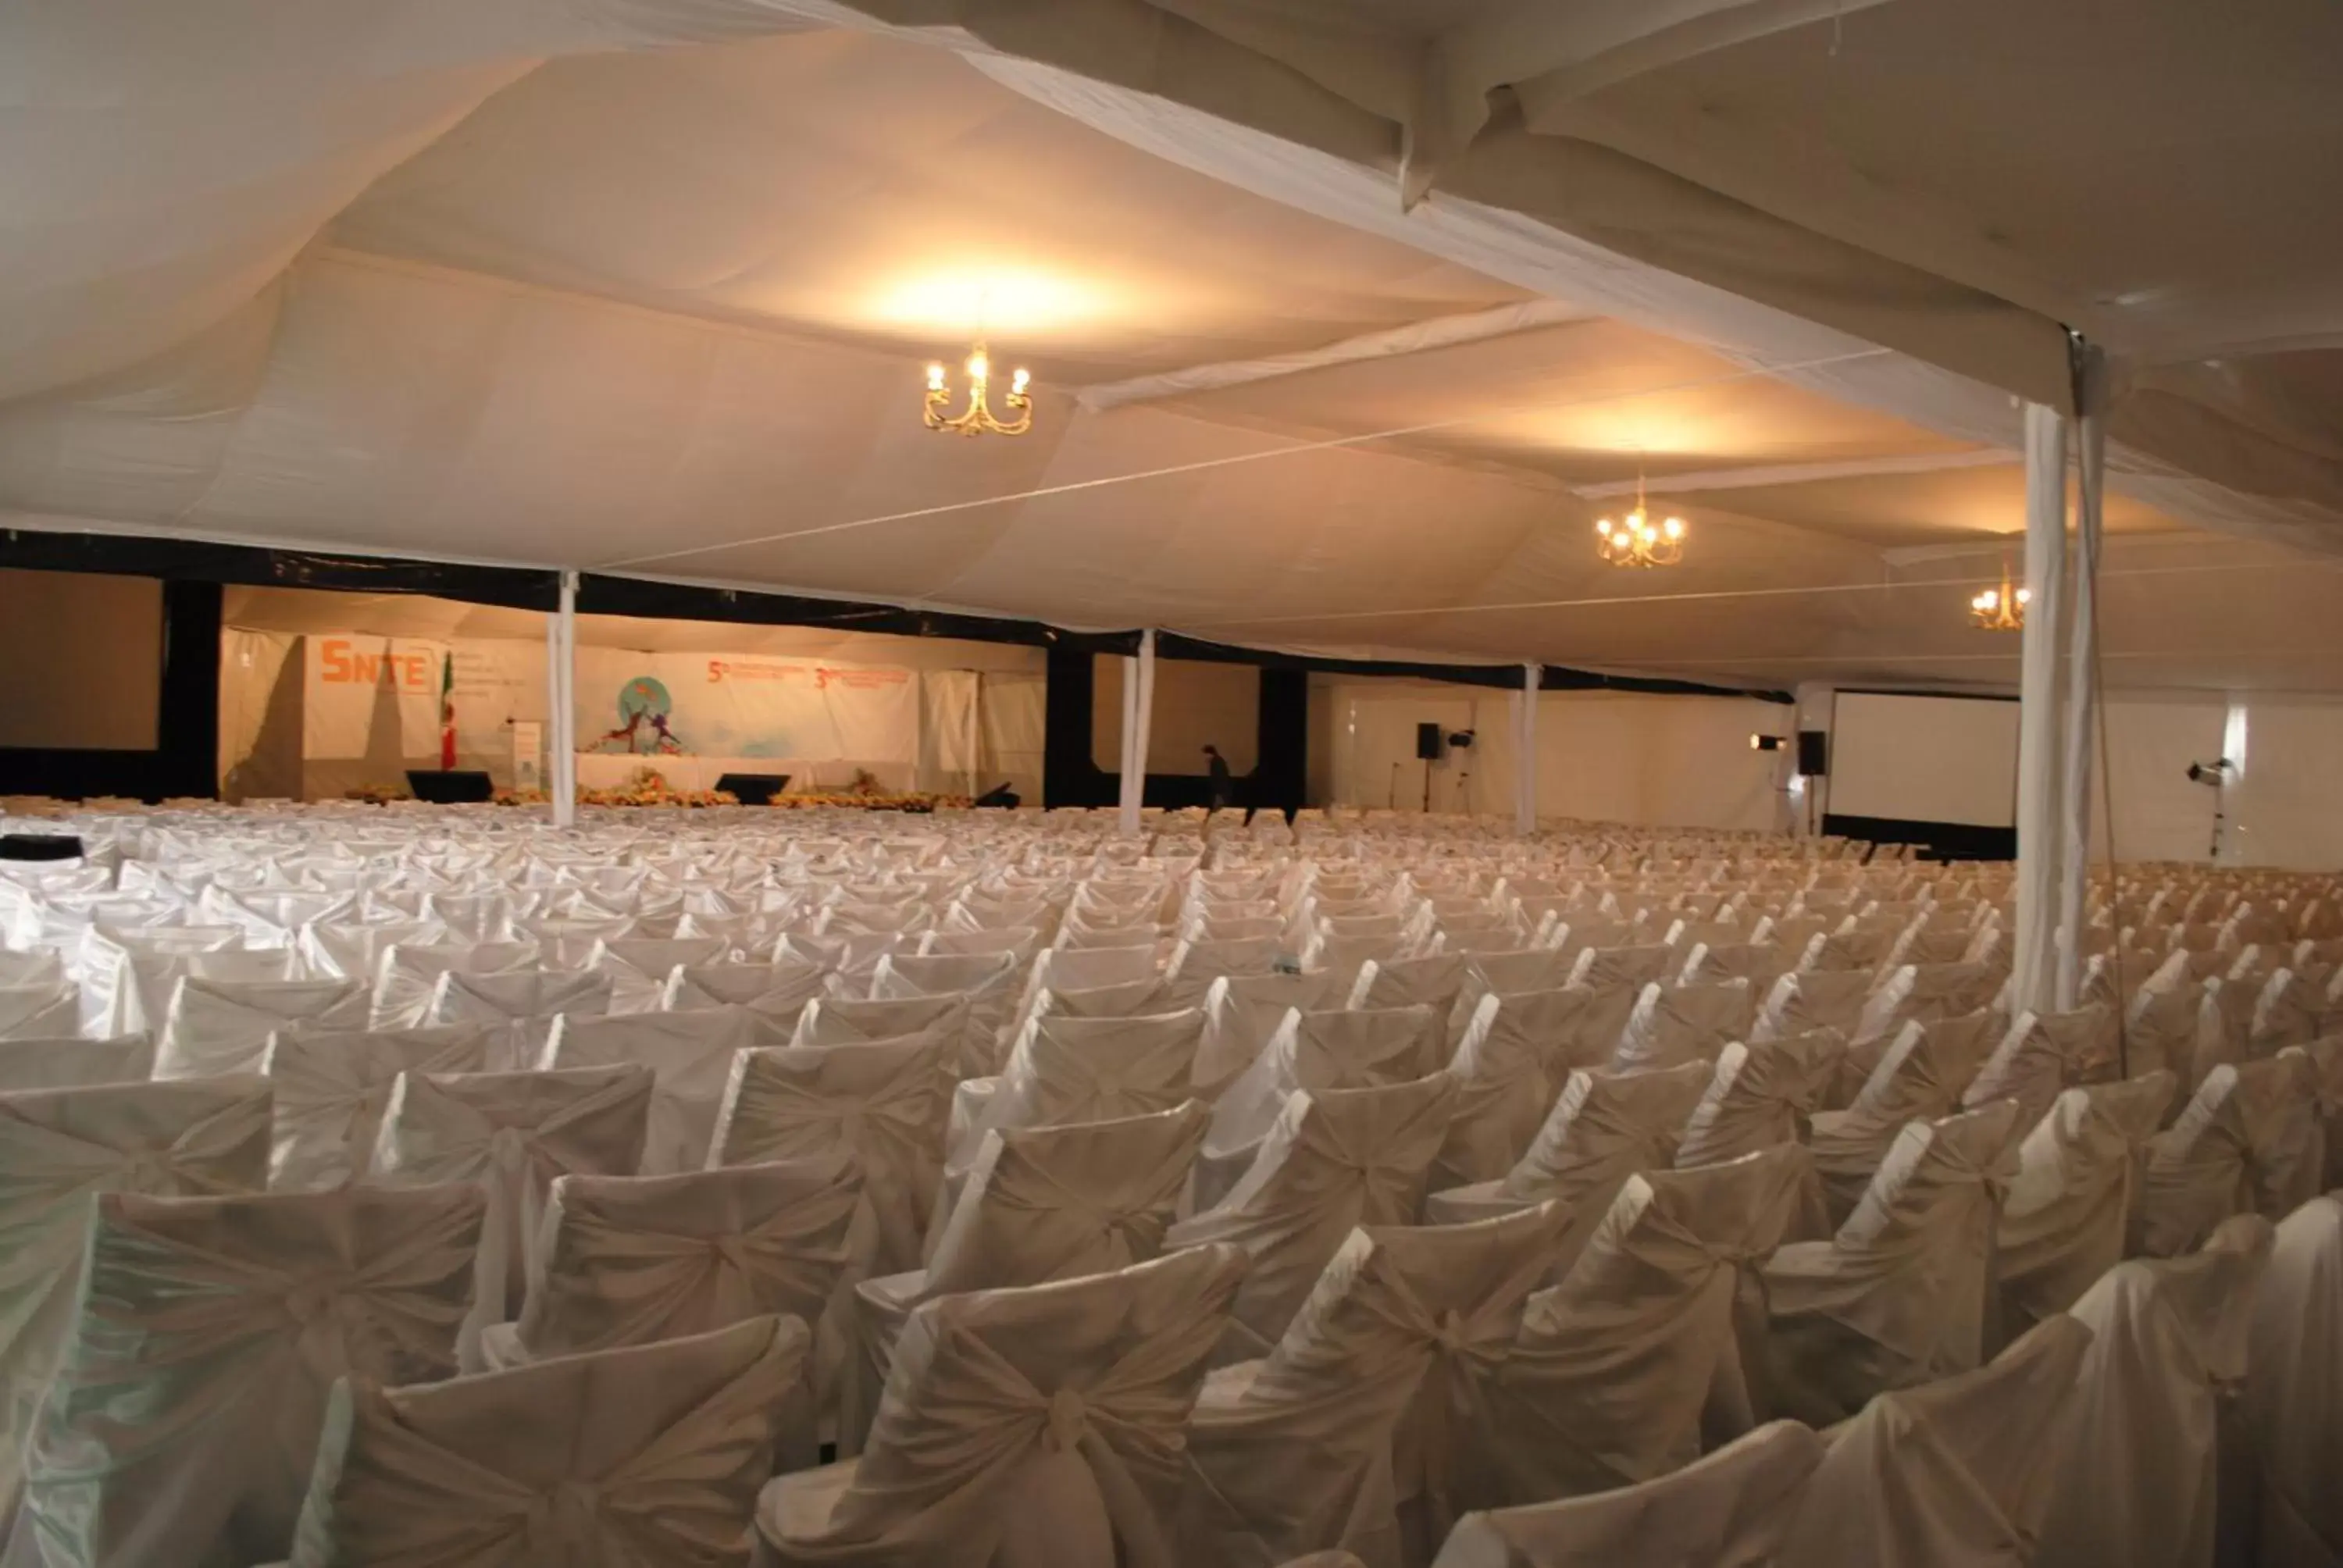 Banquet/Function facilities, Banquet Facilities in Puerto Nuevo Baja Hotel & Villas